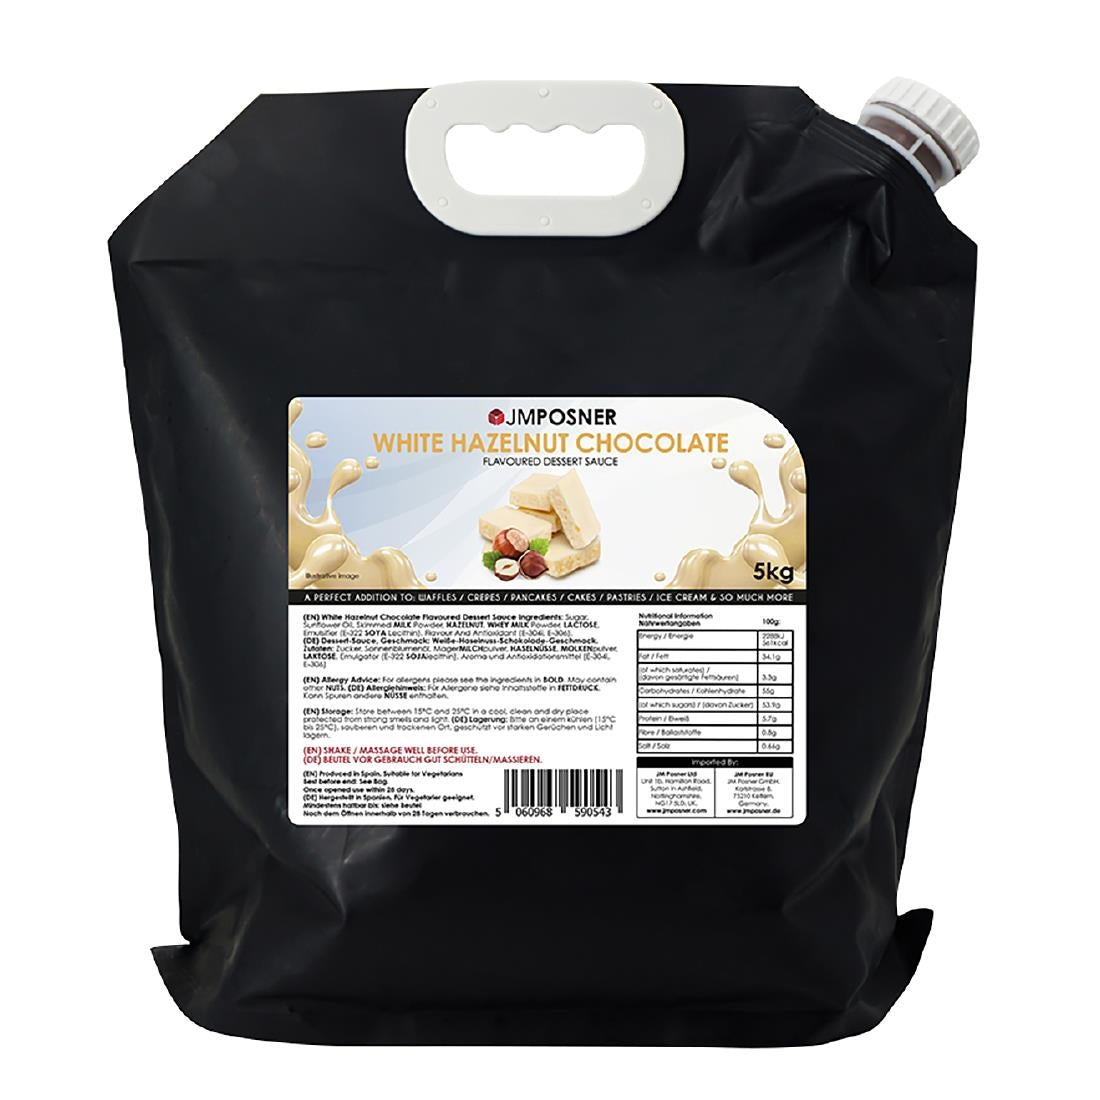 DX520 JM Posner Liquid White Chocolate Hazelnut Sauce Spout Bag (5kg)